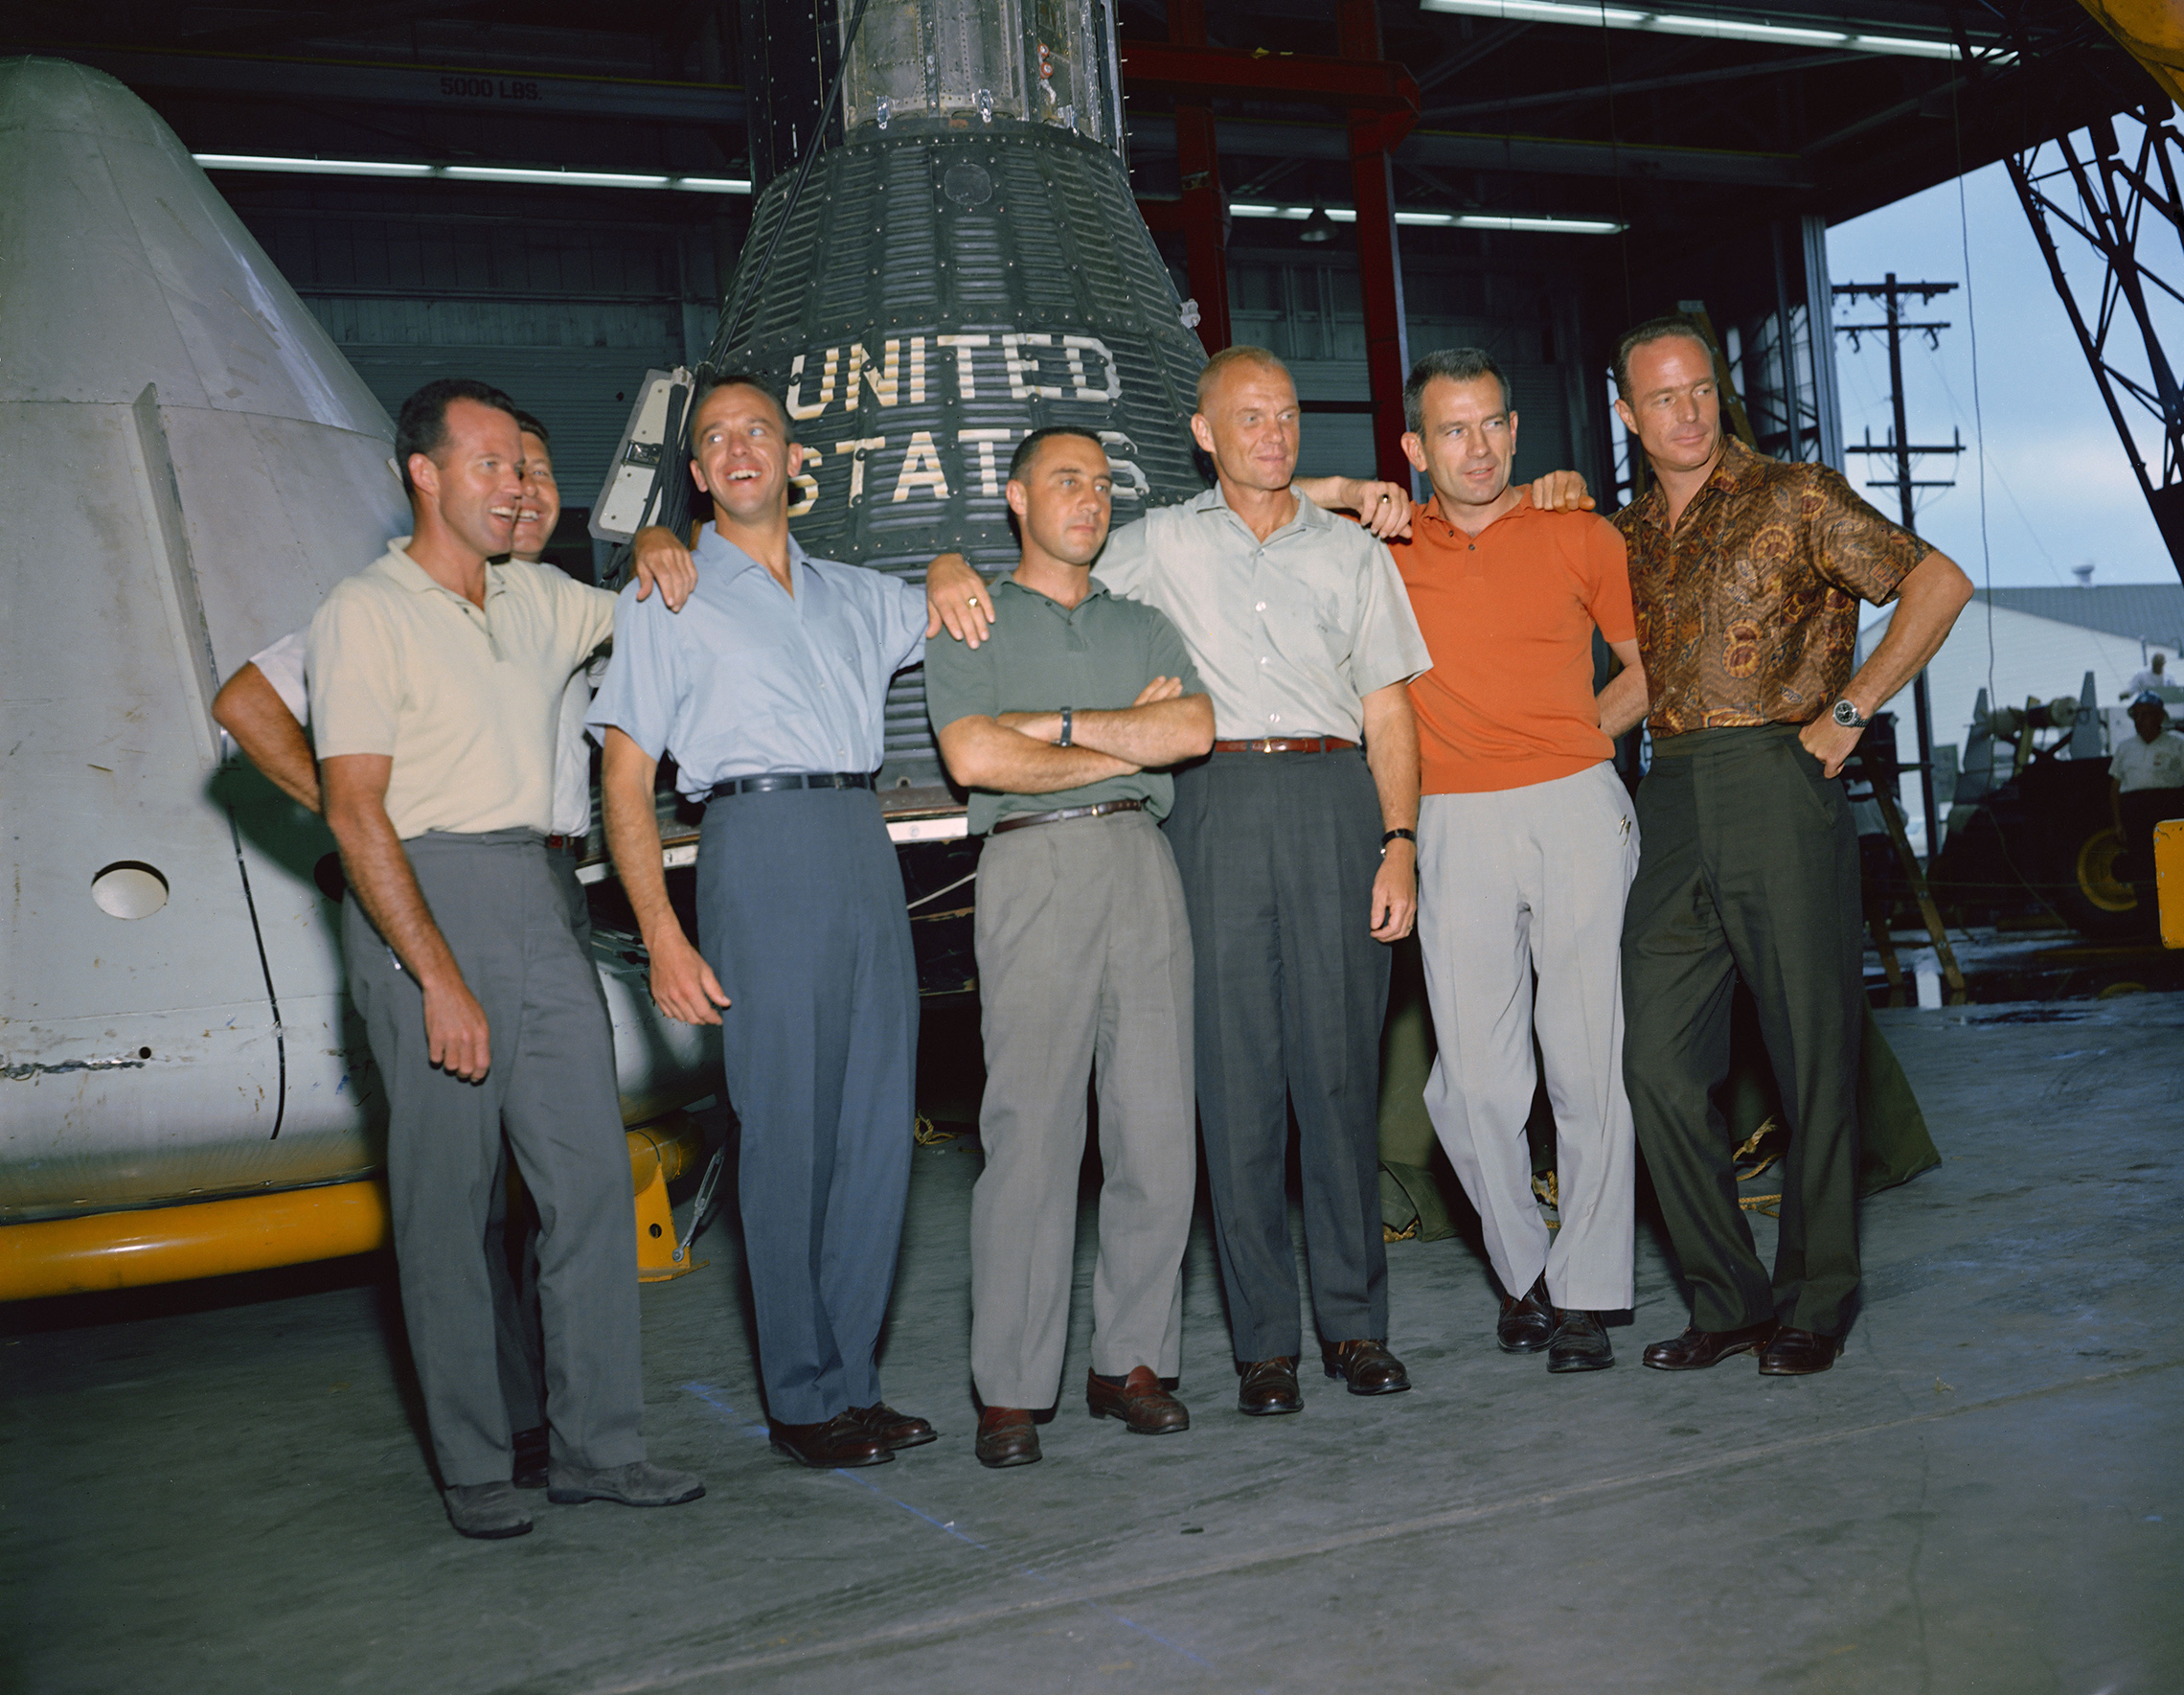 huhtikuun 9. päivänä 1959 Nasan ensimmäinen hallintovirkailija, tohtori Keith Glennan, julkisti viraston ensimmäisen astronauttiryhmän nimet lehdistötilaisuudessa Washingtonissa. Jr.; kolme ilmavoimien lentäjää, L. Gordon Cooper Jr., Virgil I. (Gus) Grissom ja Donald K. (Deke) Slayton; yhdessä merijalkaväen lentäjän John H. Glenn Jr: n kanssa tämä ryhmäkuva alkuperäisistä Mercury-astronauteista otettiin kesäkuussa 1963 Miehed Spacecraft Centerissä (MSC), nykyisessä Johnson Space Centerissä, Houstonissa, Texasissa. Astronautit ovat vasemmalta oikealle: Cooper, Schirra, Shepard, Grissom, Glenn, Slayton ja Carpenter. Projekti Mercurysta tuli Nasan ensimmäinen merkittävä hanke. Ohjelman tavoitteena oli sijoittaa ihmisen luokittelema avaruusalus Maata kiertävälle radalle, tarkkailla astronauttien suorituksia tällaisissa olosuhteissa ja palauttaa astronautti ja avaruusalus turvallisesti takaisin. Mercury-lennot todistivat, että ihmiset pystyivät elämään ja työskentelemään avaruudessa, ja raivasivat tietä Gemini-ja Apollo-ohjelmille sekä kaikille muille ihmisten avaruuslennoille. (NASA)'s first administrator, Dr. Keith Glennan, announced the names of the agency's first group of astronauts at a news conference in Washington, D.C. Now known as the "Original Seven," they included three Naval aviators, M. Scott Carpenter, Walter M. Schirra Jr., and Alan B. Shepard Jr.; three Air Force pilots, L. Gordon Cooper Jr., Virgil I. (Gus) Grissom, and Donald K. (Deke) Slayton; along with Marine Corps aviator John H. Glenn Jr. This group photo of the original Mercury astronauts was taken in June 1963 at the Manned Spacecraft Center (MSC), now Johnson Space Center, in Houston, Texas. The astronauts are, left to right: Cooper, Schirra, Shepard, Grissom, Glenn, Slayton and Carpenter. Project Mercury became NASA's first major undertaking. The objectives of the program were to place a human-rated spacecraft into orbit around Earth, observe the astronauts' performance in such conditions and safely recover the astronaut and the spacecraft. The Mercury flights proved that humans could live and work in space, and paved the way for the Gemini and Apollo programs as well as for all further human spaceflight. (NASA)